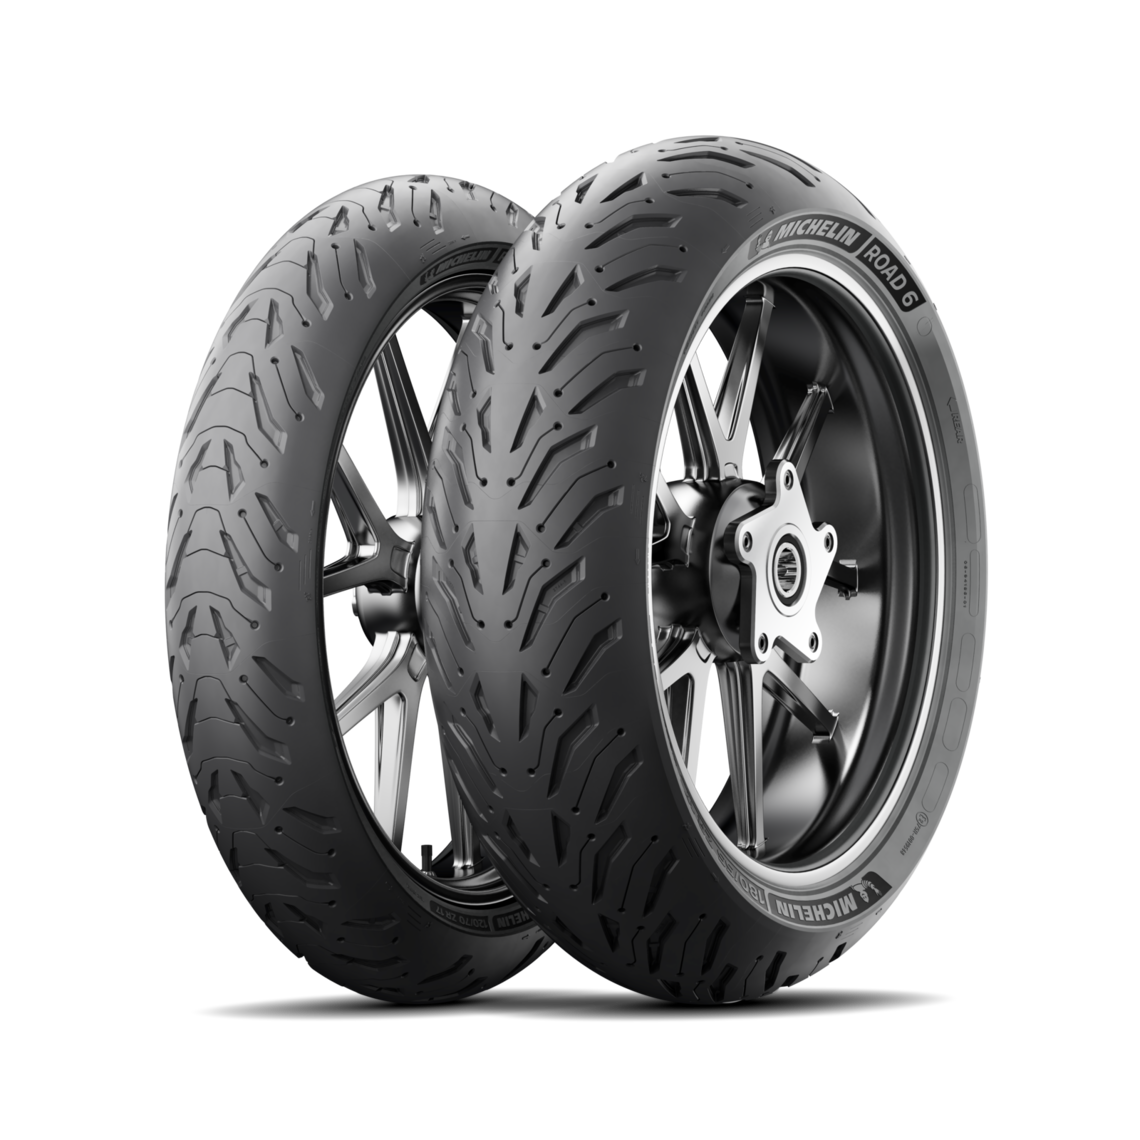 Gomme Nuove Michelin 120/70 ZR19 60W ROAD 6 pneumatici nuovi Estivo